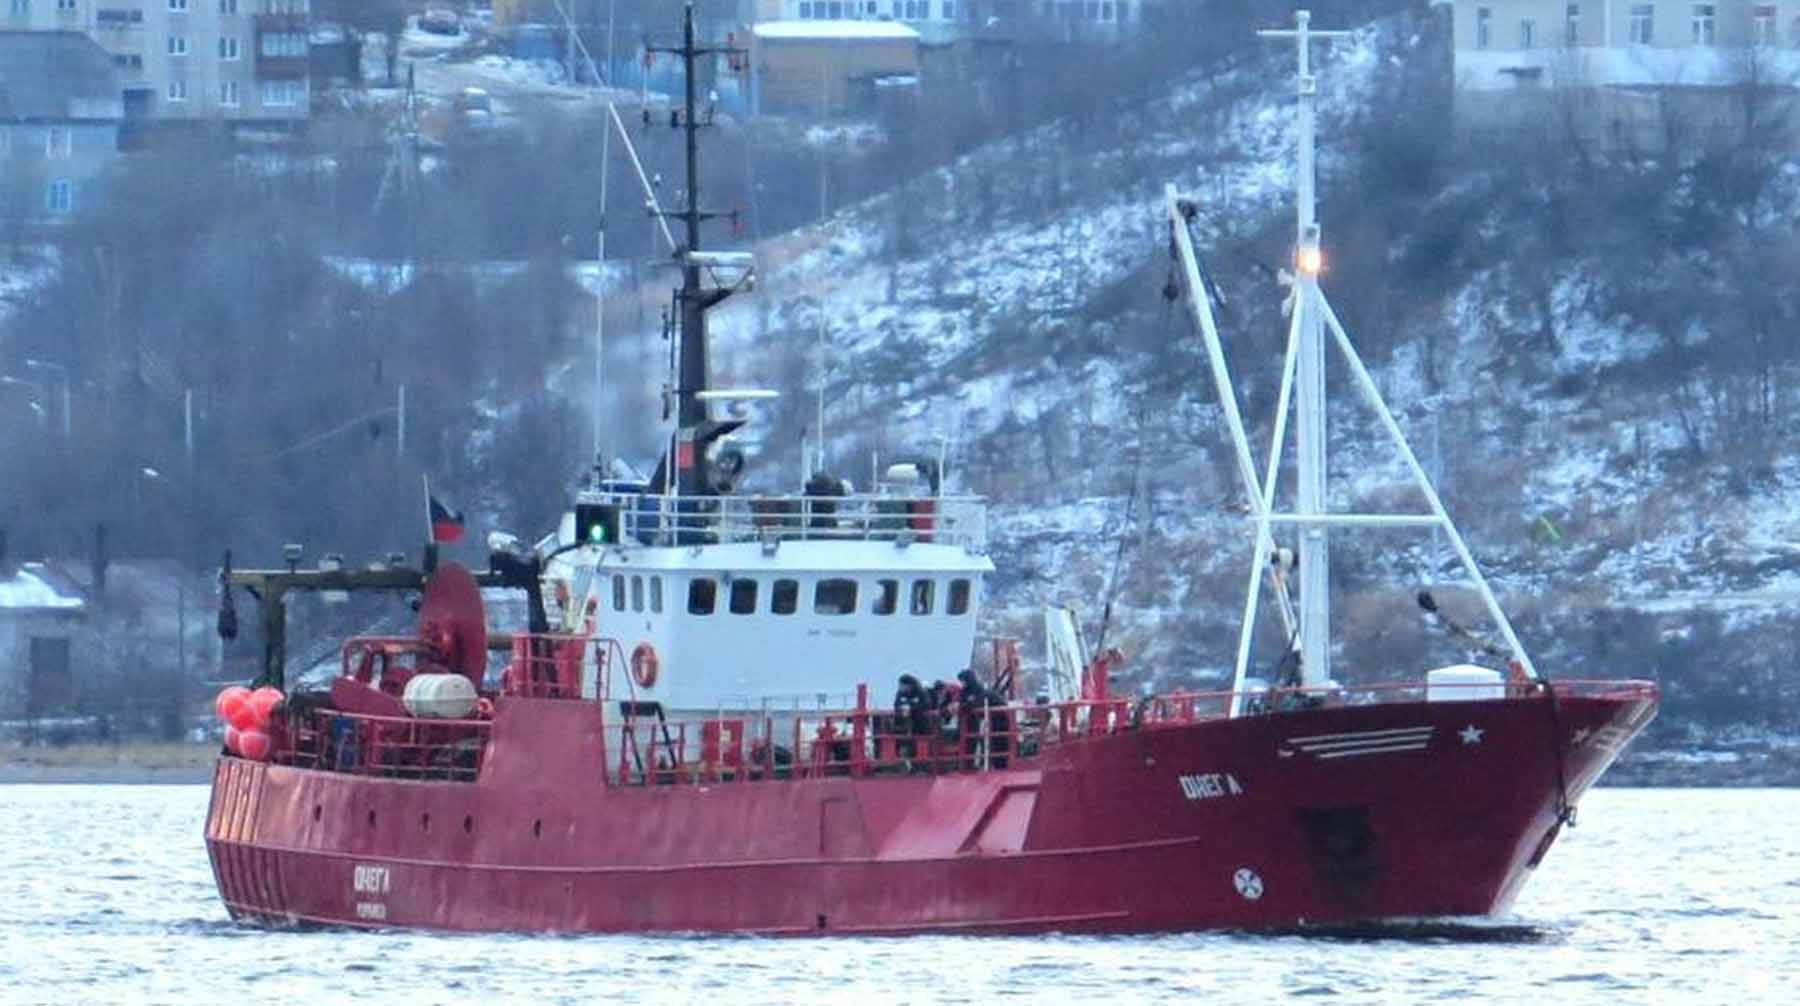 Операция по спасению моряков с траулера была прекращена 30 декабря Рыболовное судно «Онега»